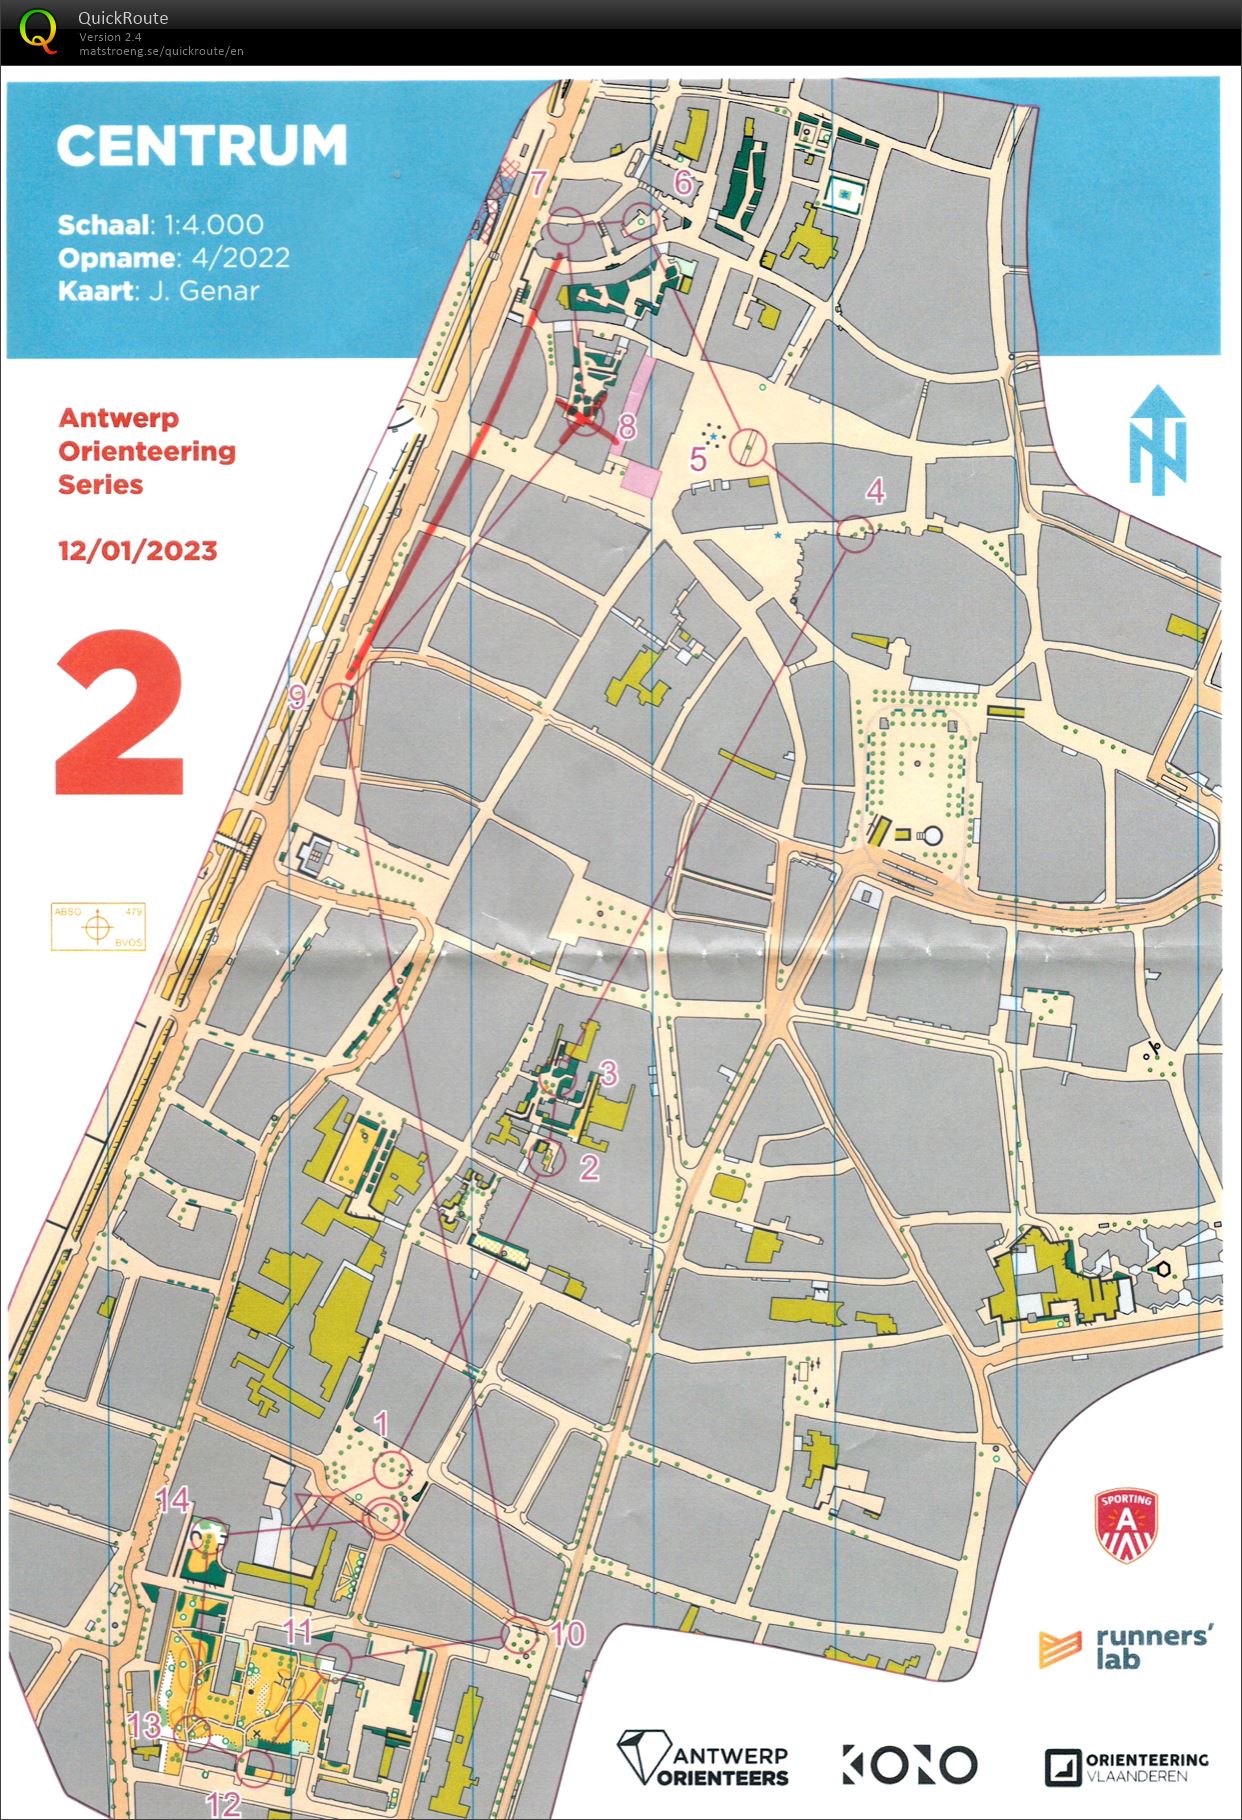 Antwerp Orienteering Series - Centrum - Kort (12.01.2023)